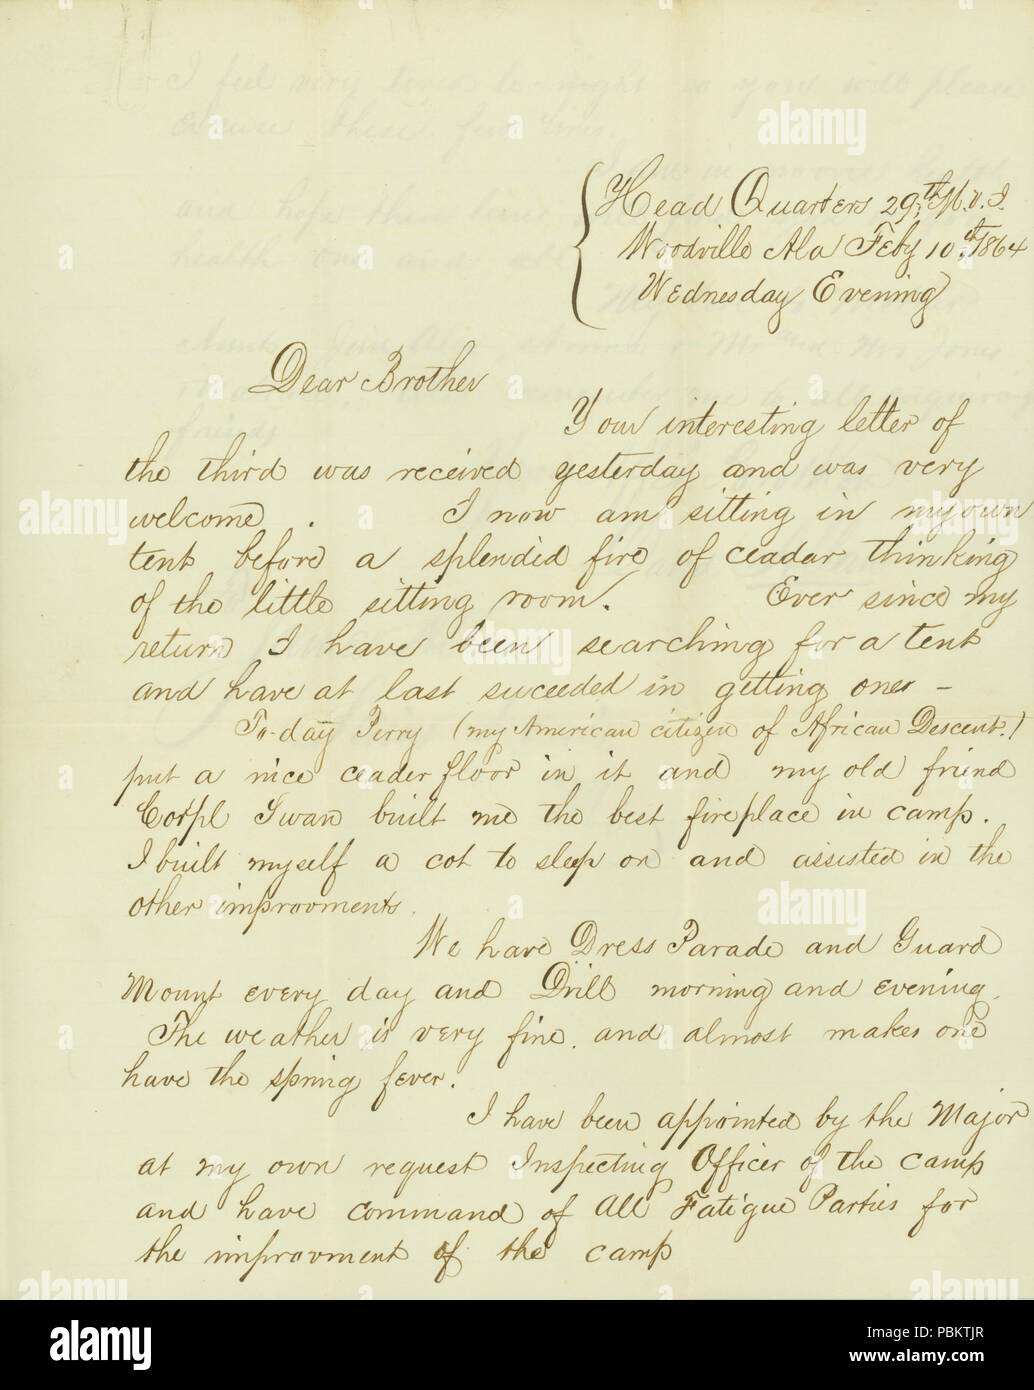 906 Lettre signée David Allan, Head Quarters 29e M.V.I., Woodville, Ala., à son frère, James Allan, Saint Louis, Mo., Février 10, 1864 Banque D'Images